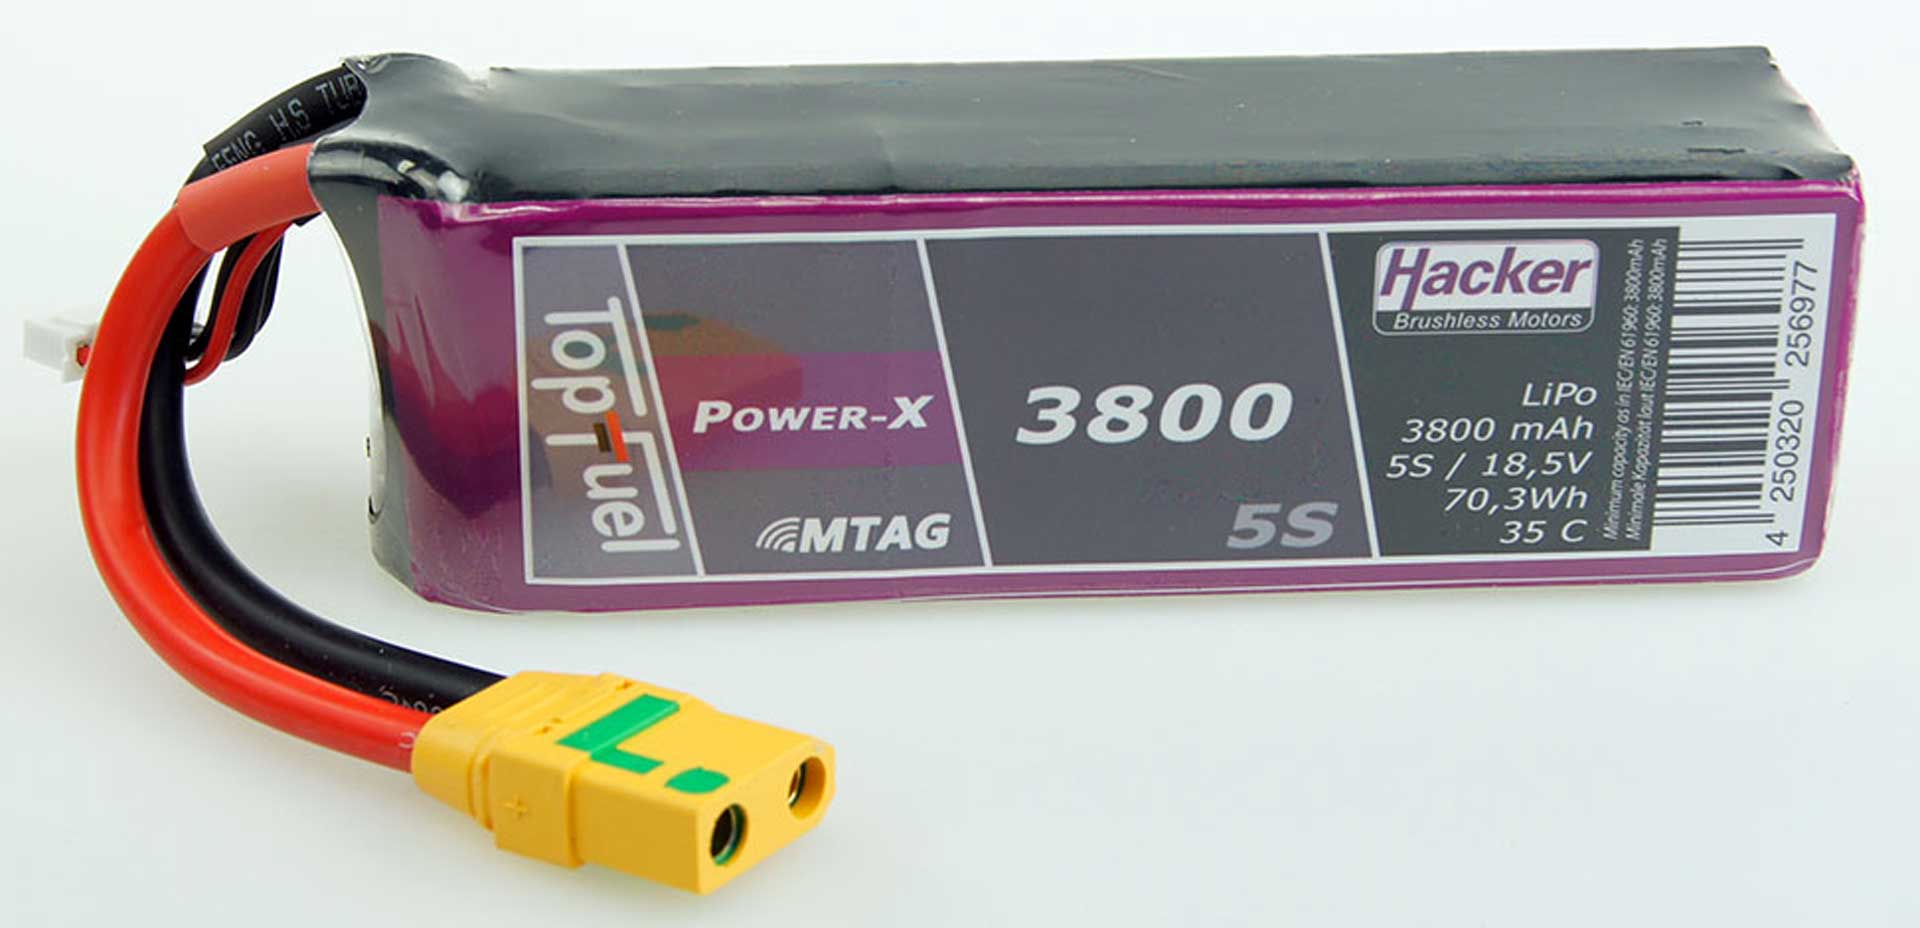 HACKER TopFuel LiPo 35C Power-X 3800mAh 5S 18,5V MTAG